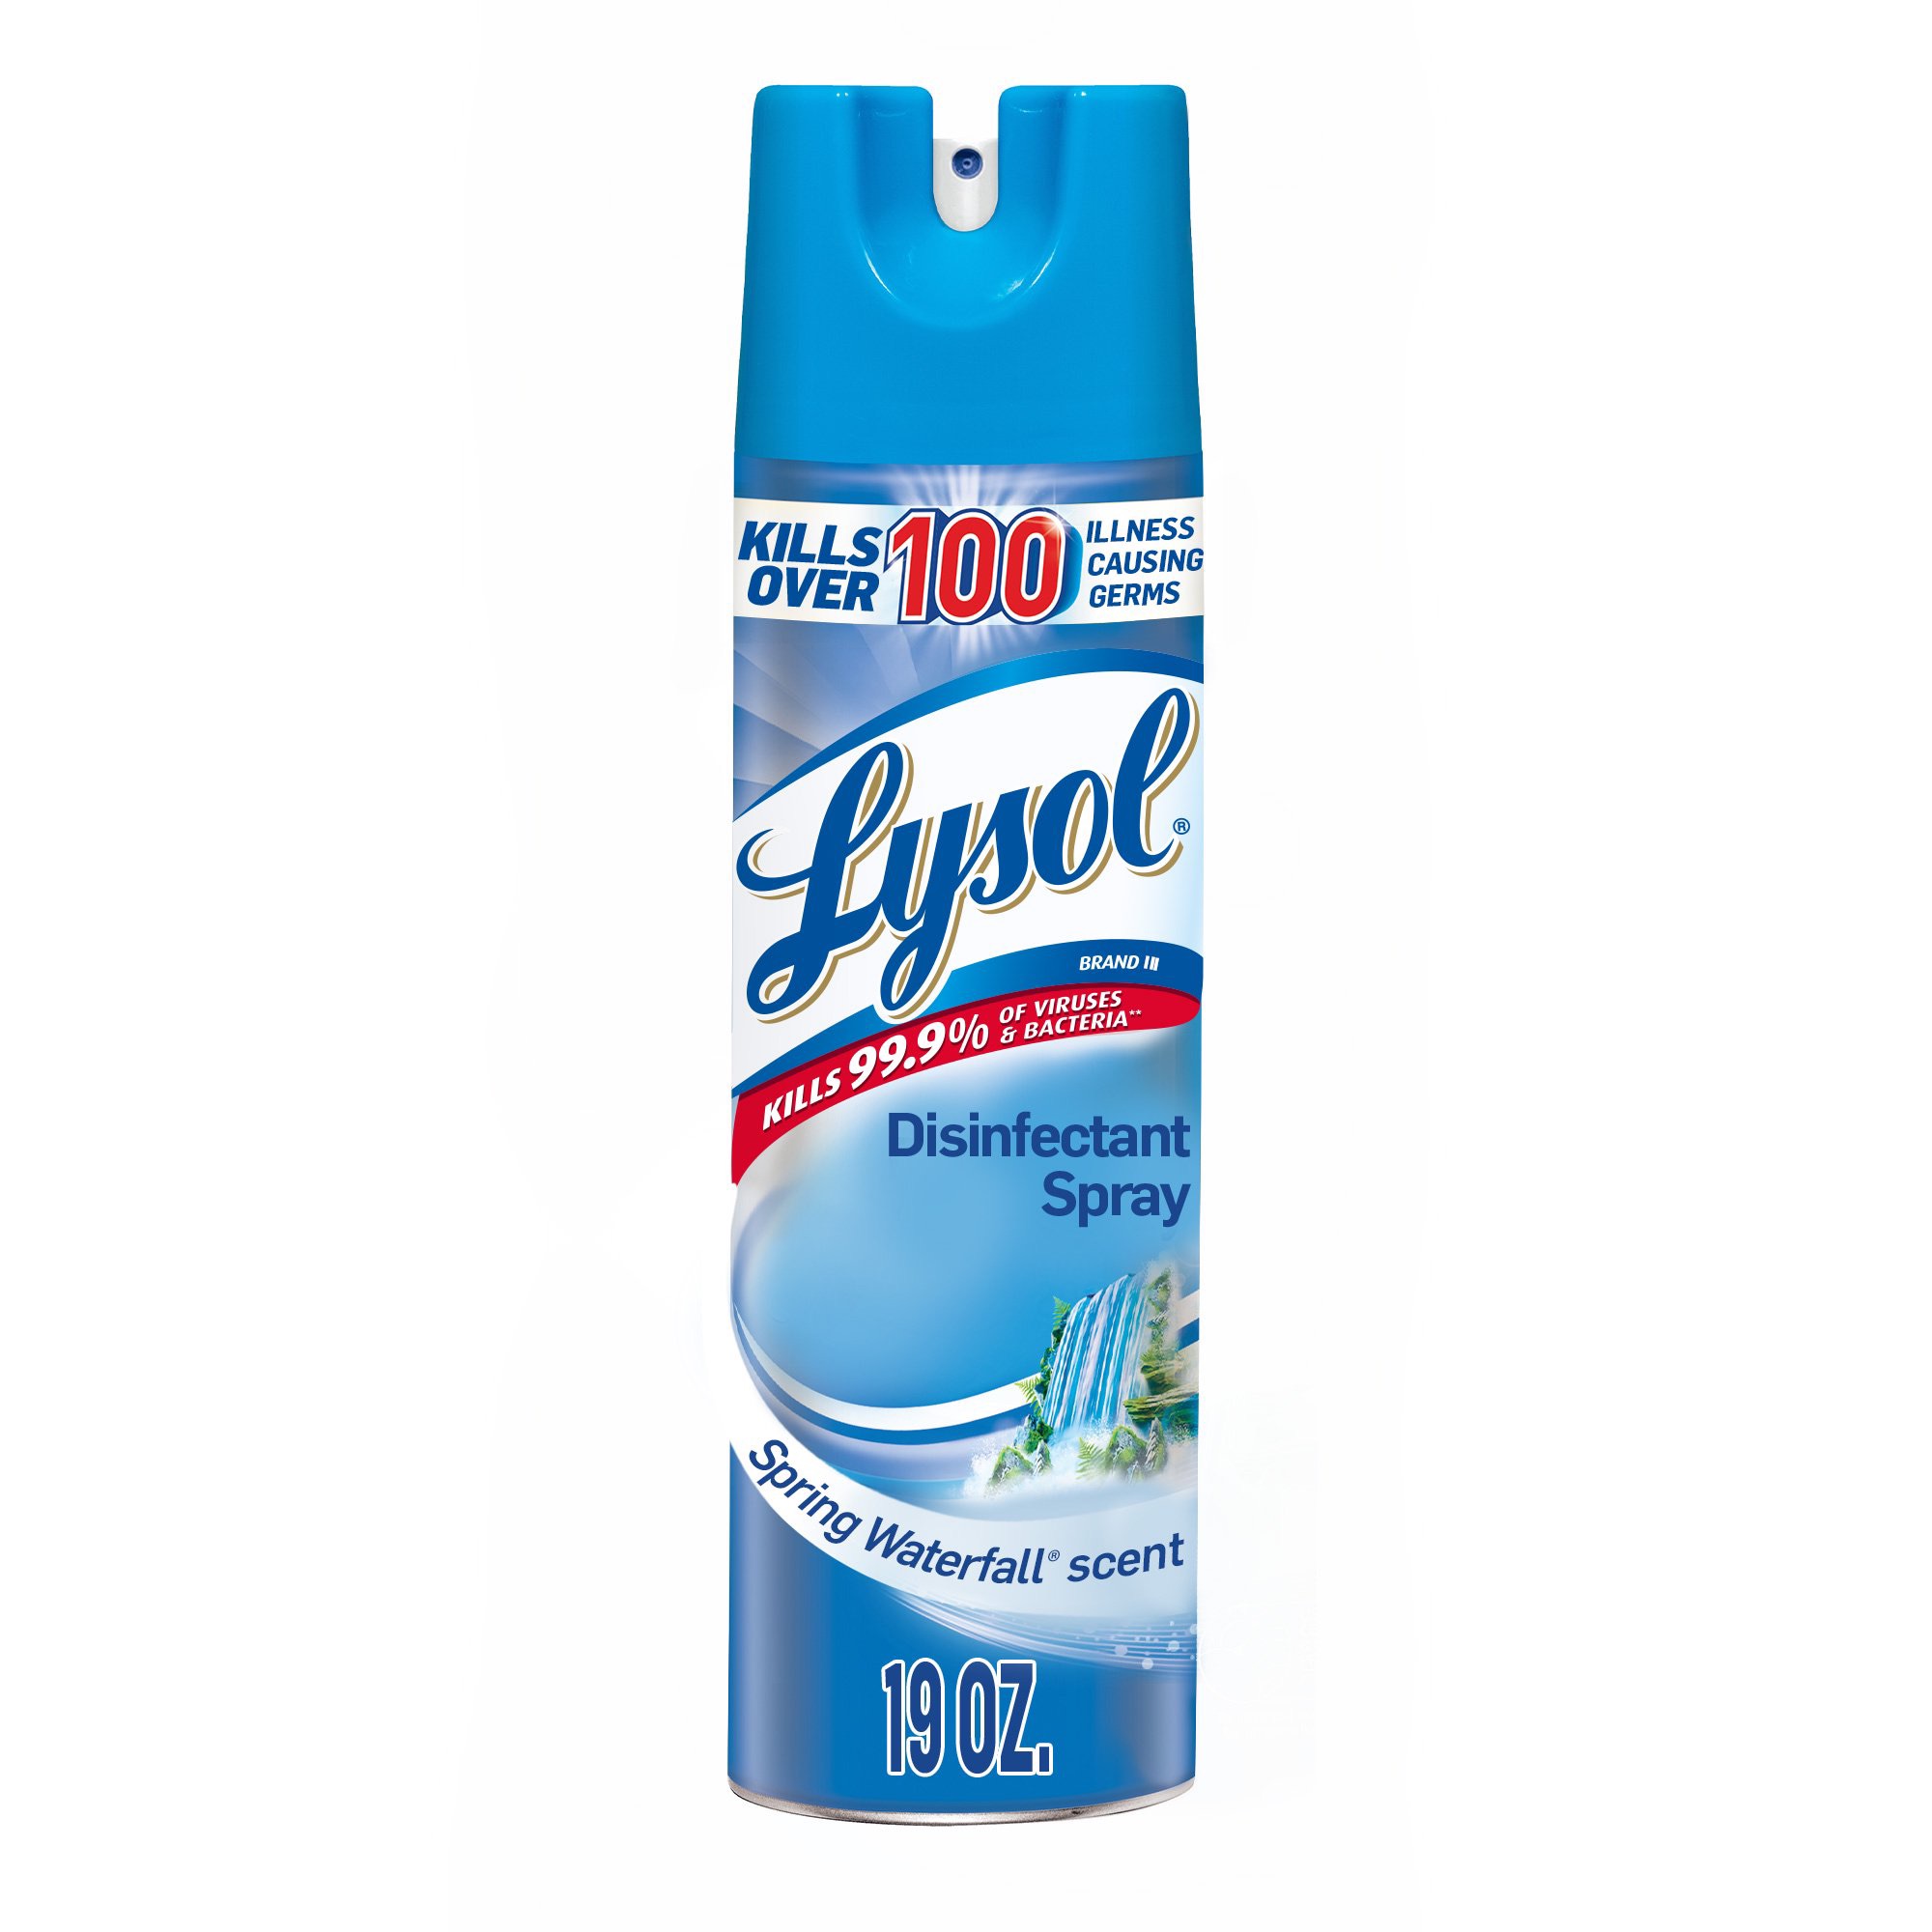 消毒喷雾Lysol Disinfectant Spray, Spring Waterfall, 19oz, Kills Germs - Walmart.com - Walmart.com